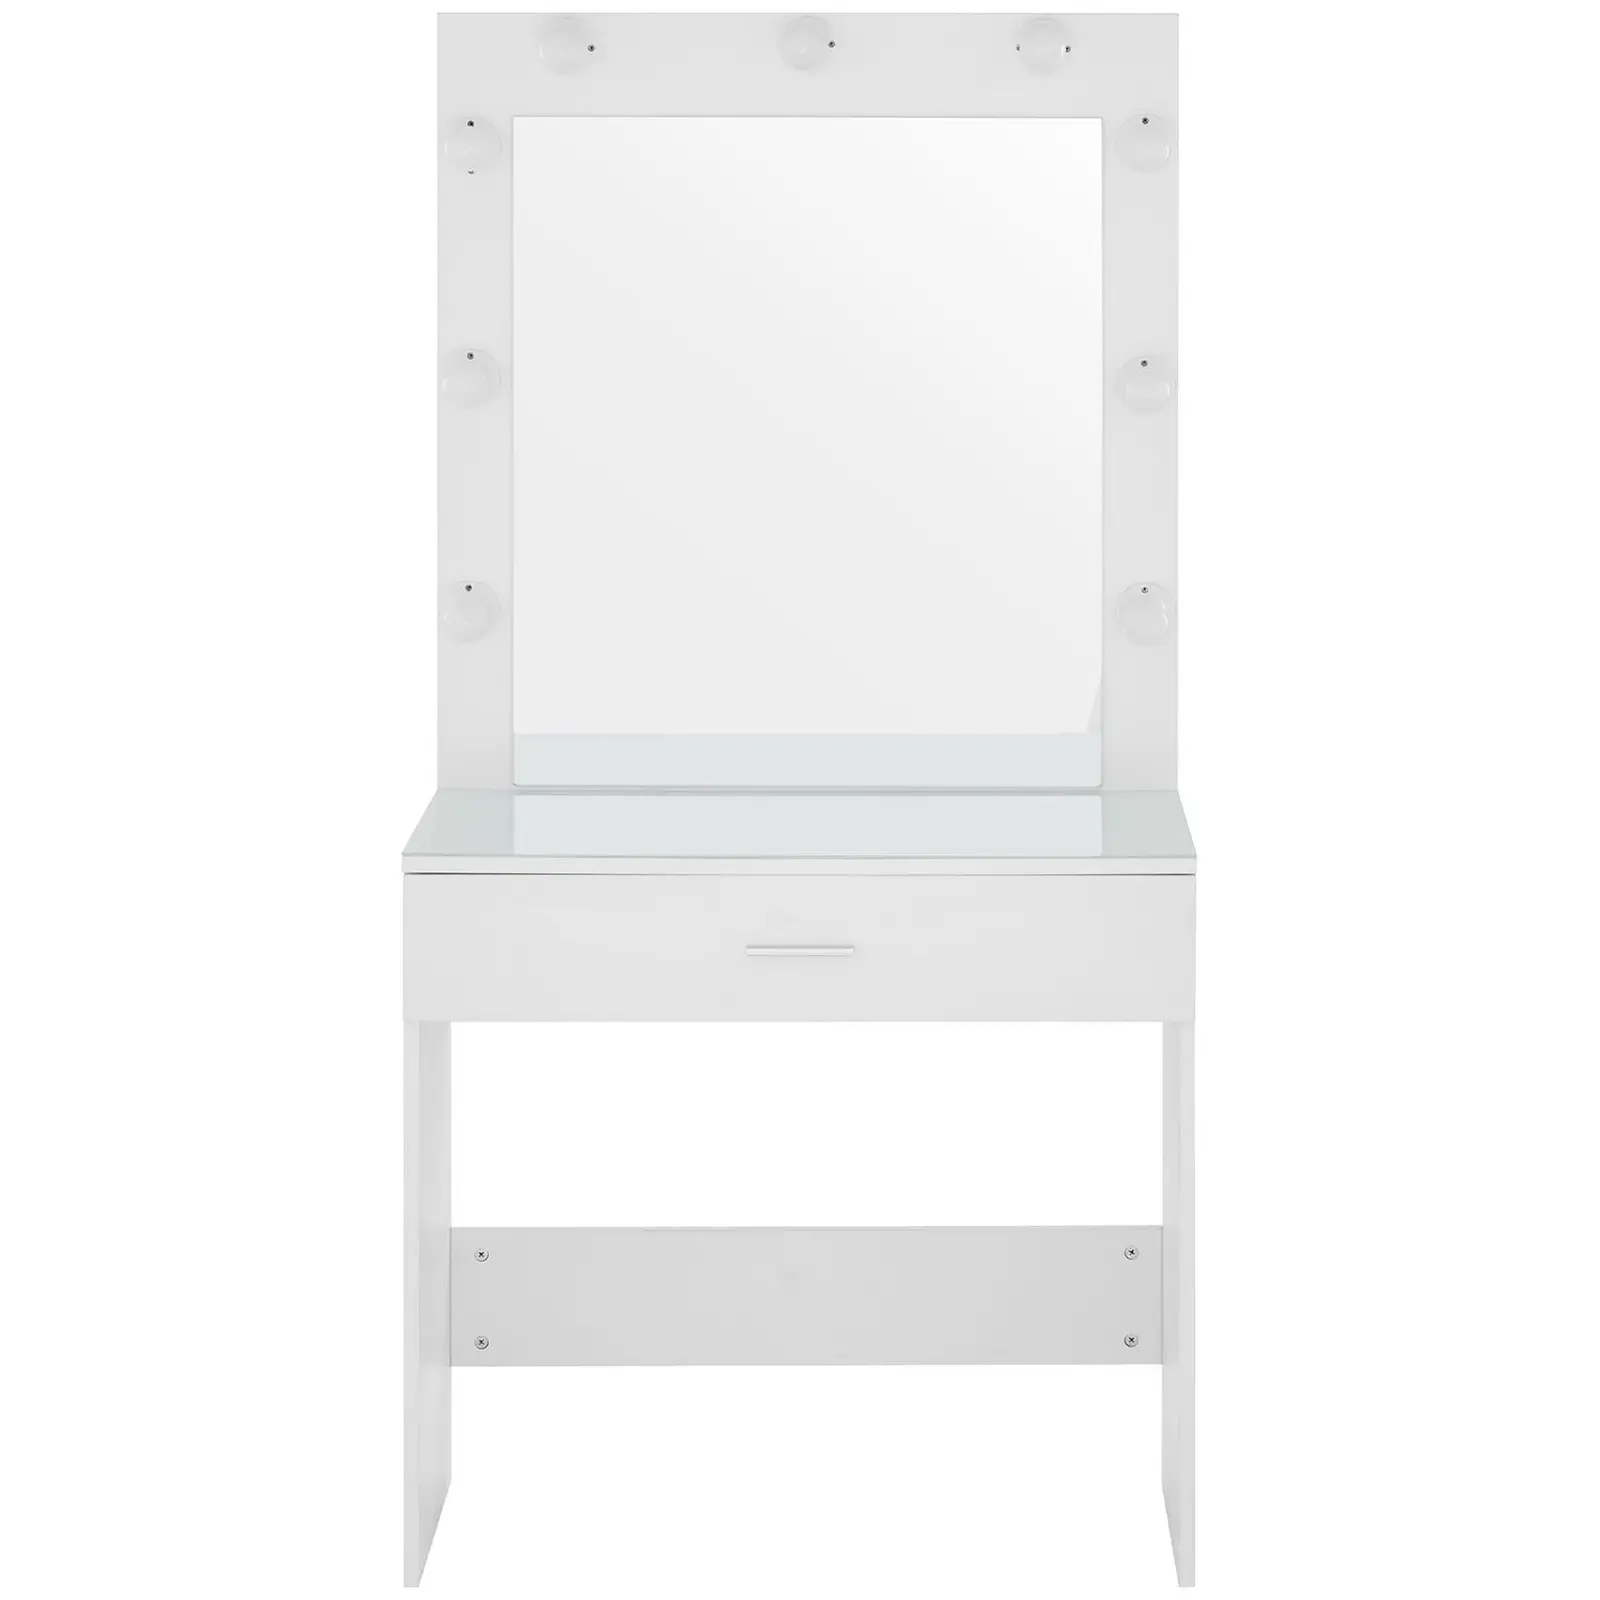 Toelette trucco con specchio e luci - 80 x 40 x 160 cm - Bianco